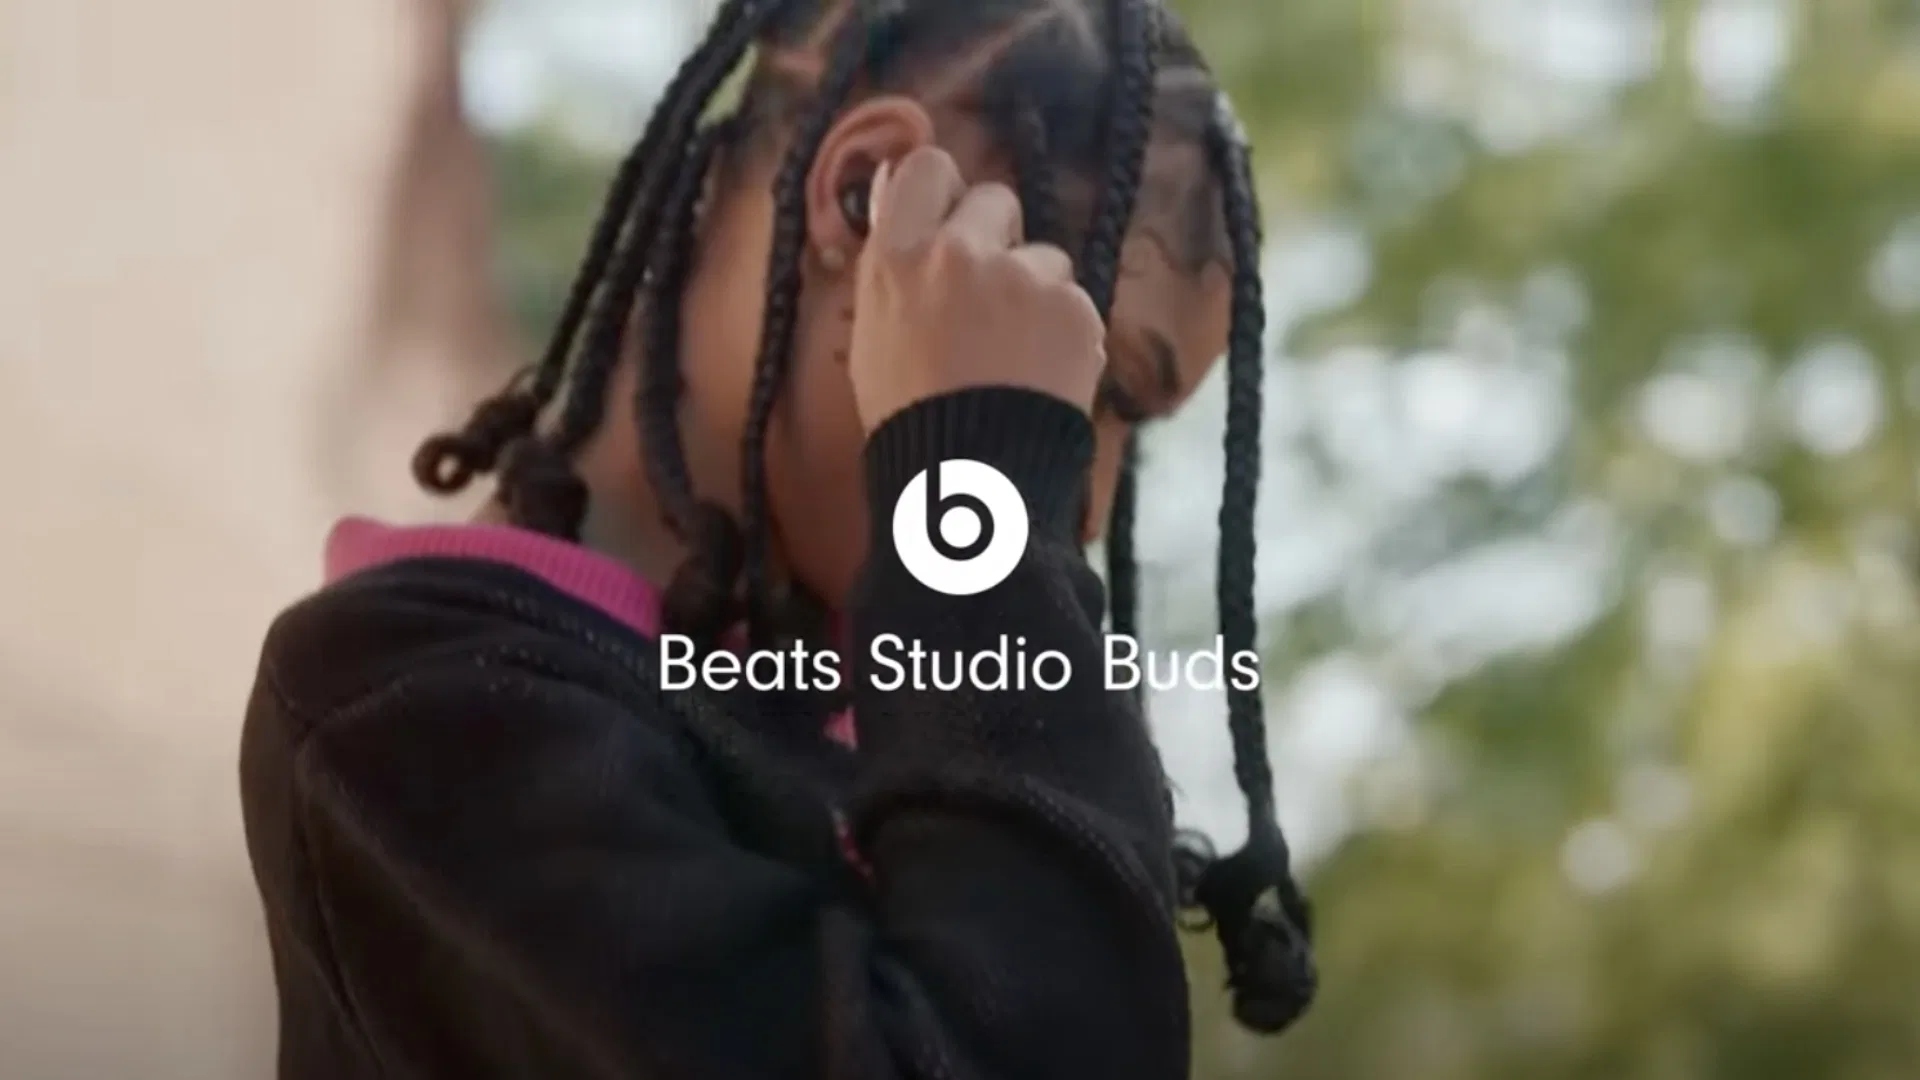 Cùng xem các video trong chiến dịch quảng bá Beats Studio Buds: It’s The Music